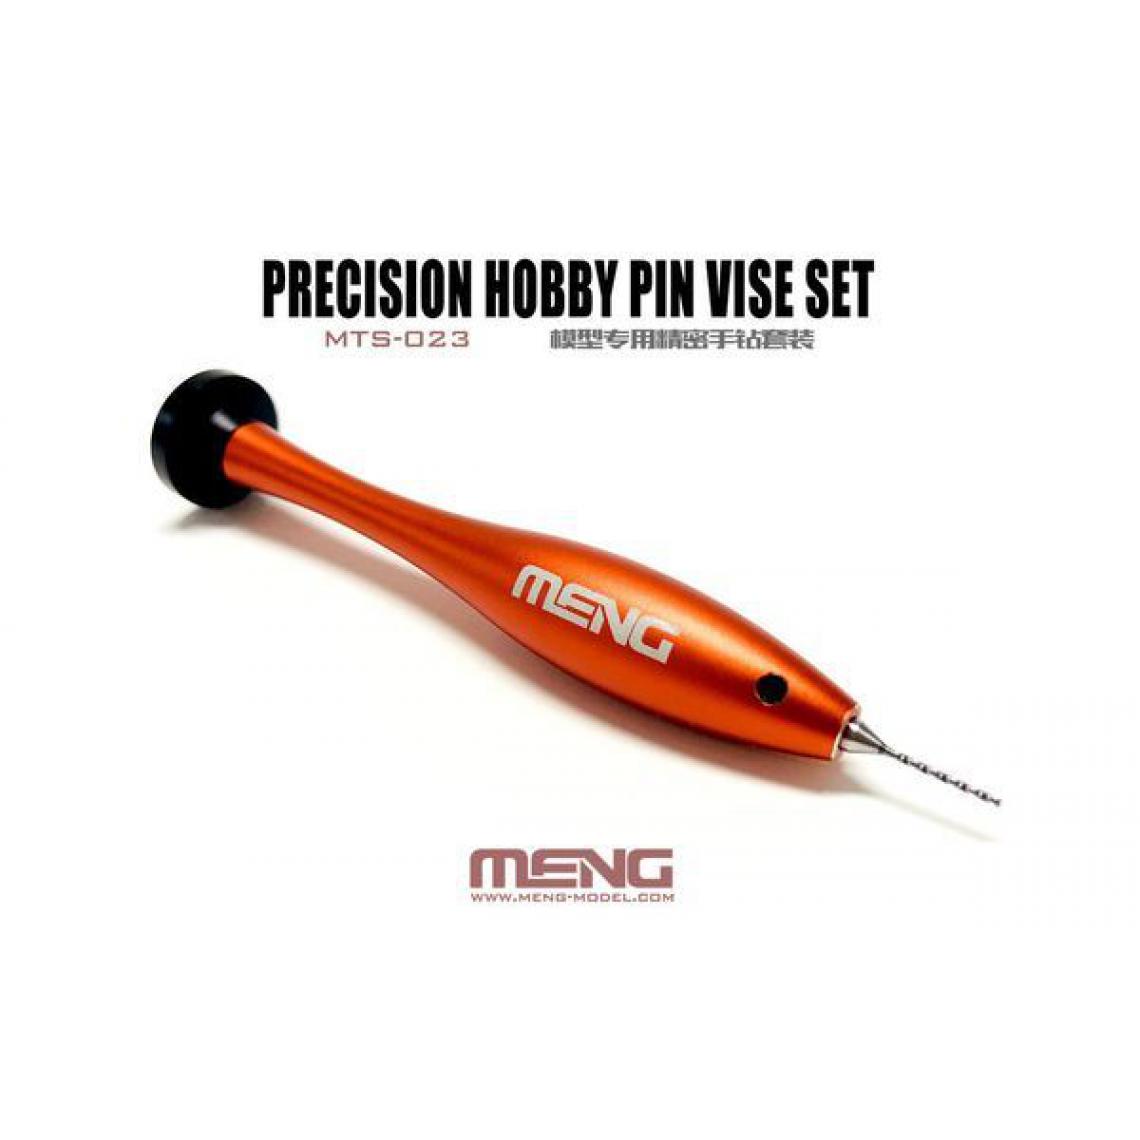 Meng - Precision Hobby Pin Vise Set - MENG-Model - Accessoires et pièces